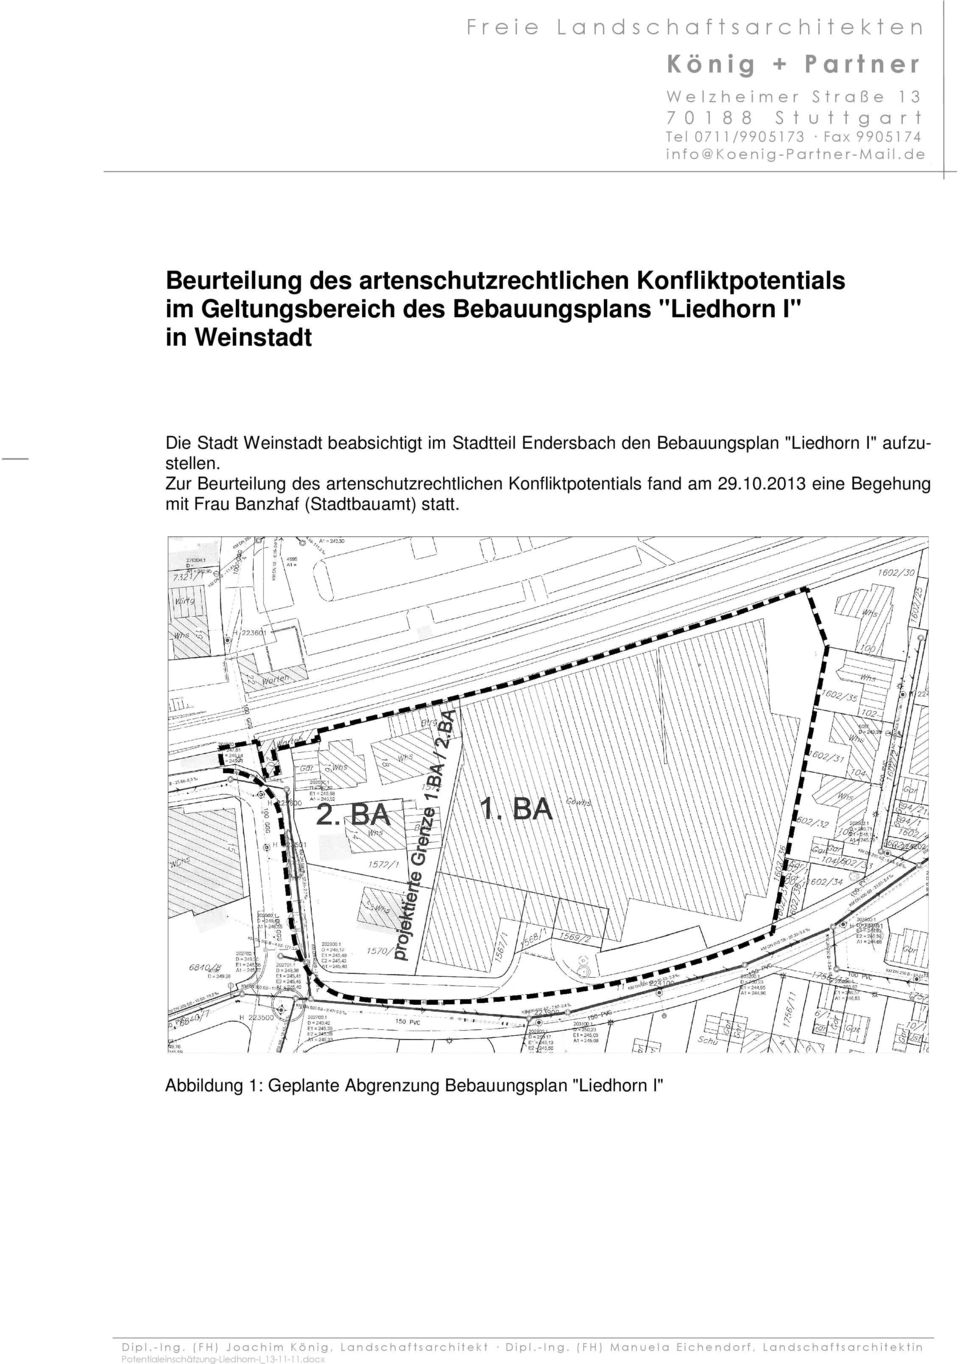 Bebauungsplan "Liedhorn I" aufzustellen. Zur Beurteilung des artenschutzrechtlichen Konfliktpotentials fand am 29.10.2013 eine Begehung mit Frau Banzhaf (Stadtbauamt) statt.